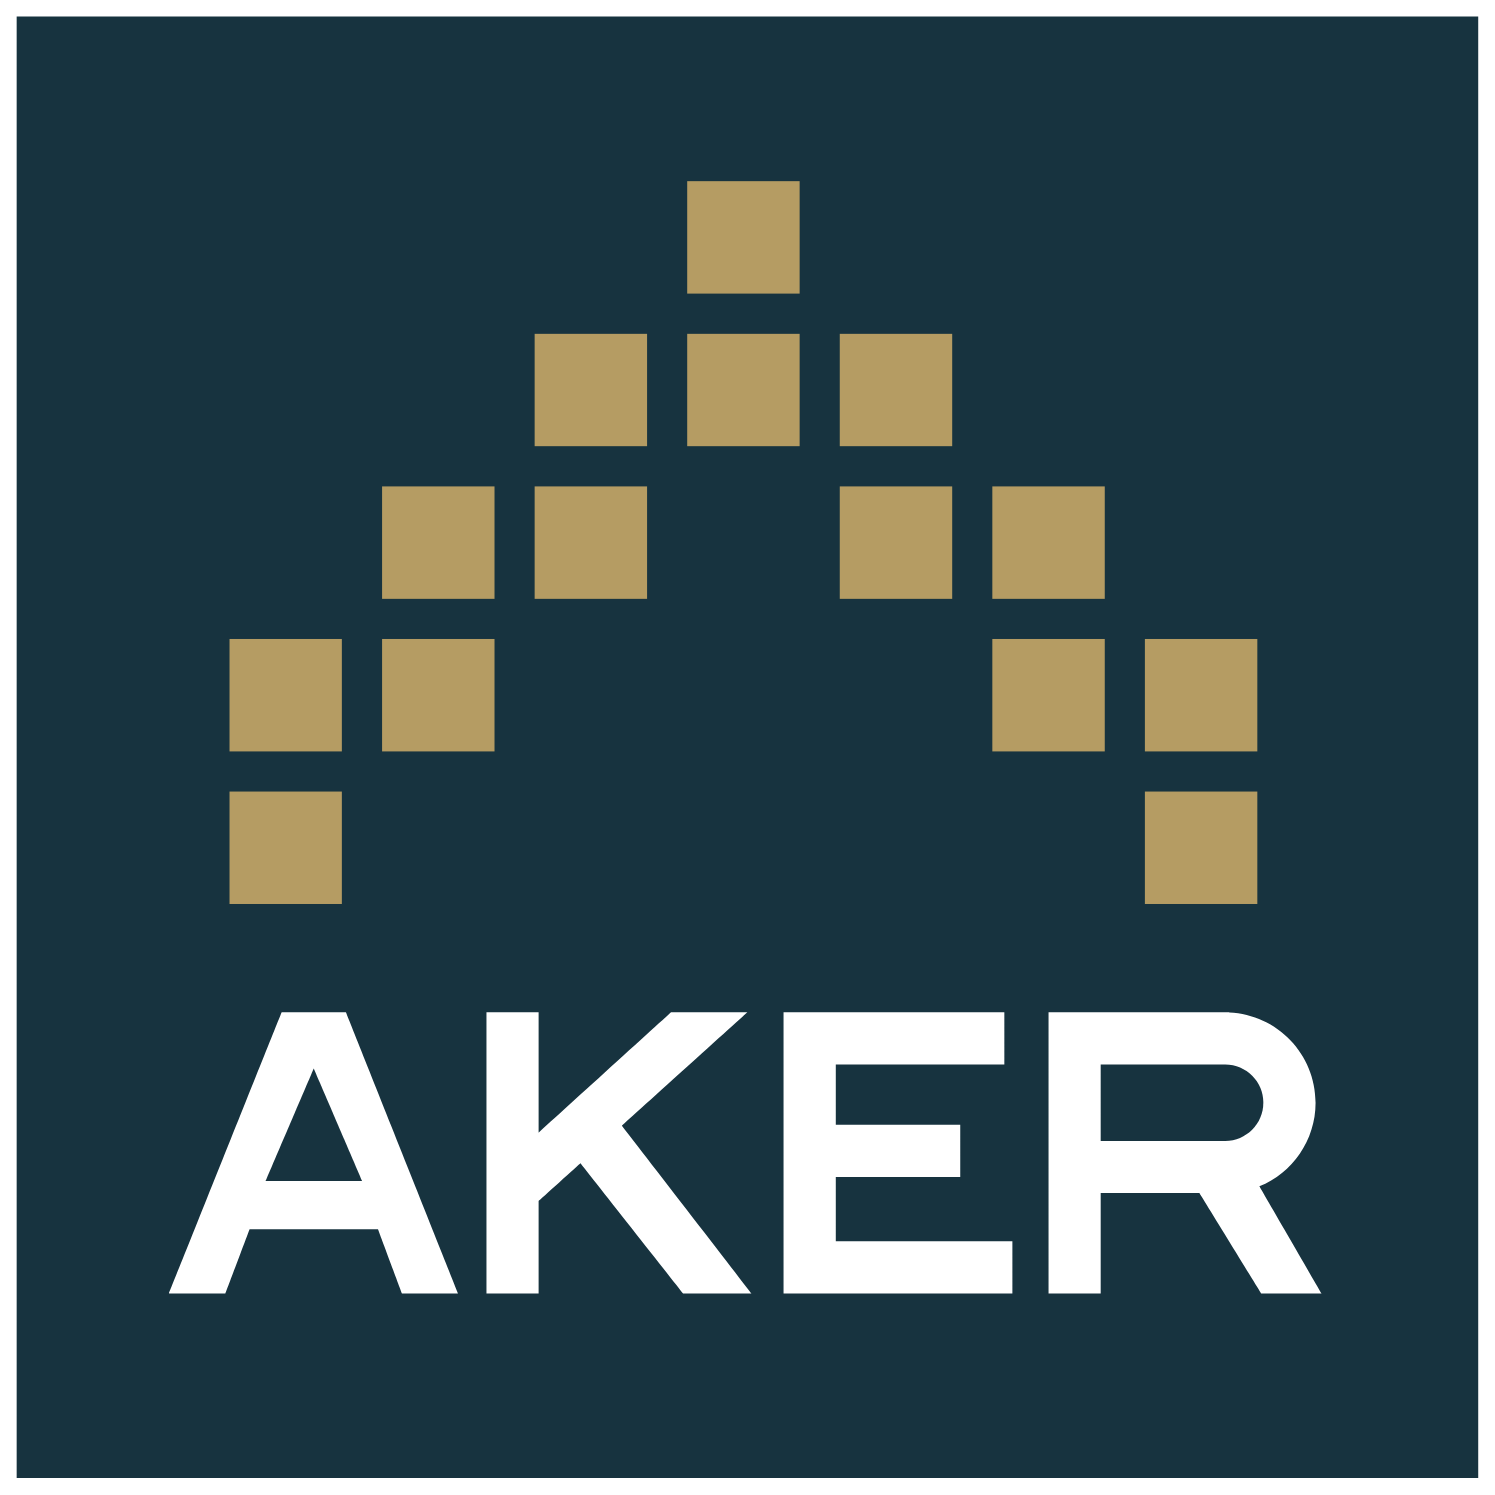 Aker ASA logo (PNG transparent)